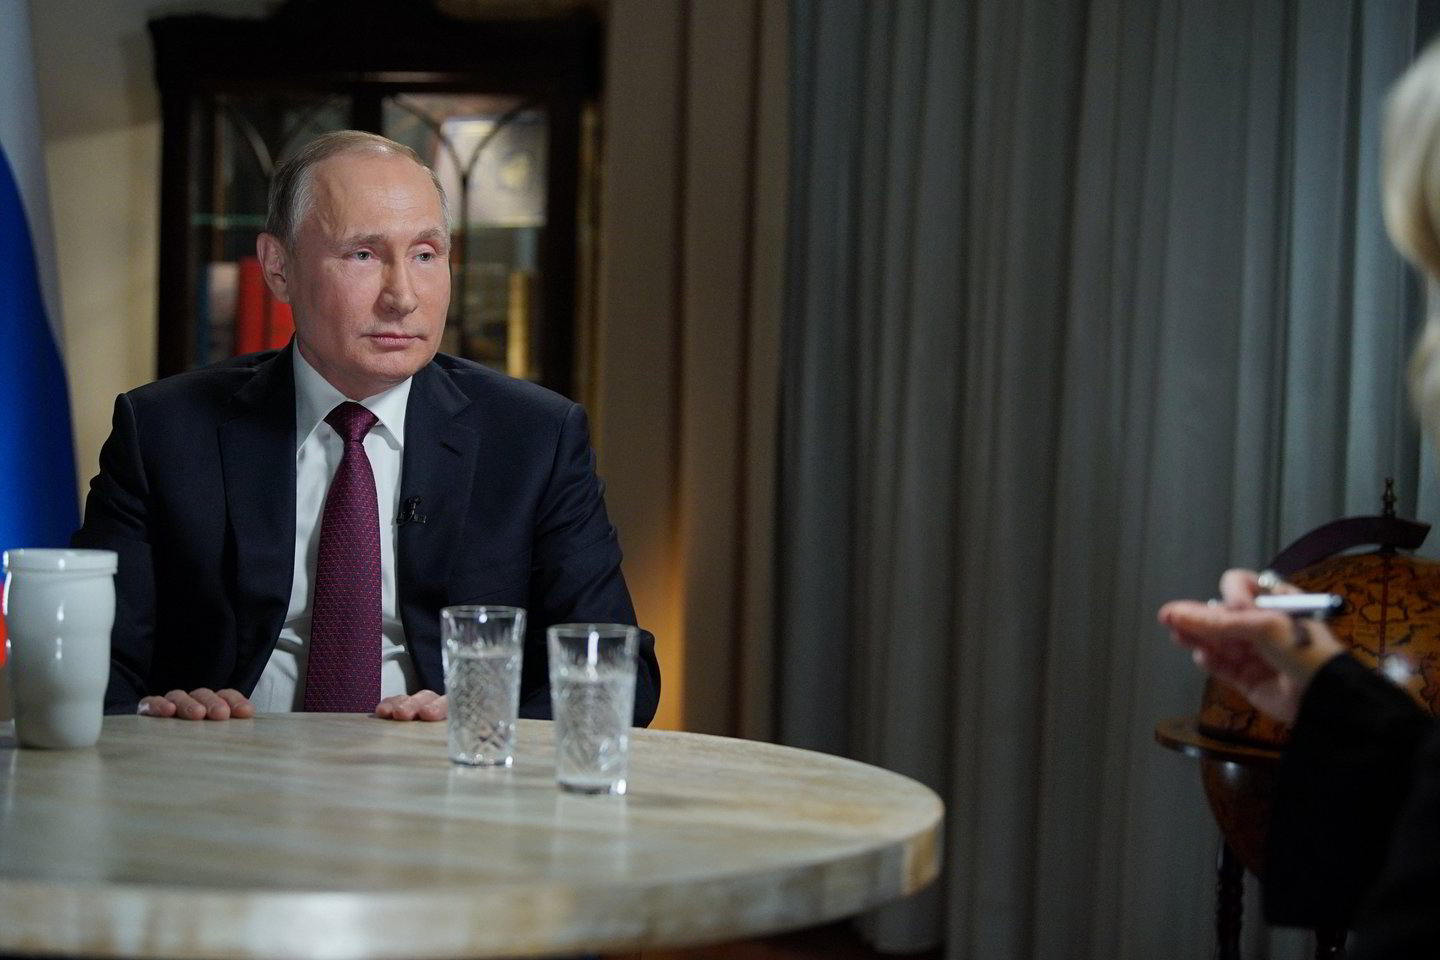  Apie praeitį V.Putinas prisipažino naujame dviejų valandų dokumentiniame filme, pasirodžiusiame prieš artėjančius rinkimus. <br>Sputnik/Scanpix nuotr.